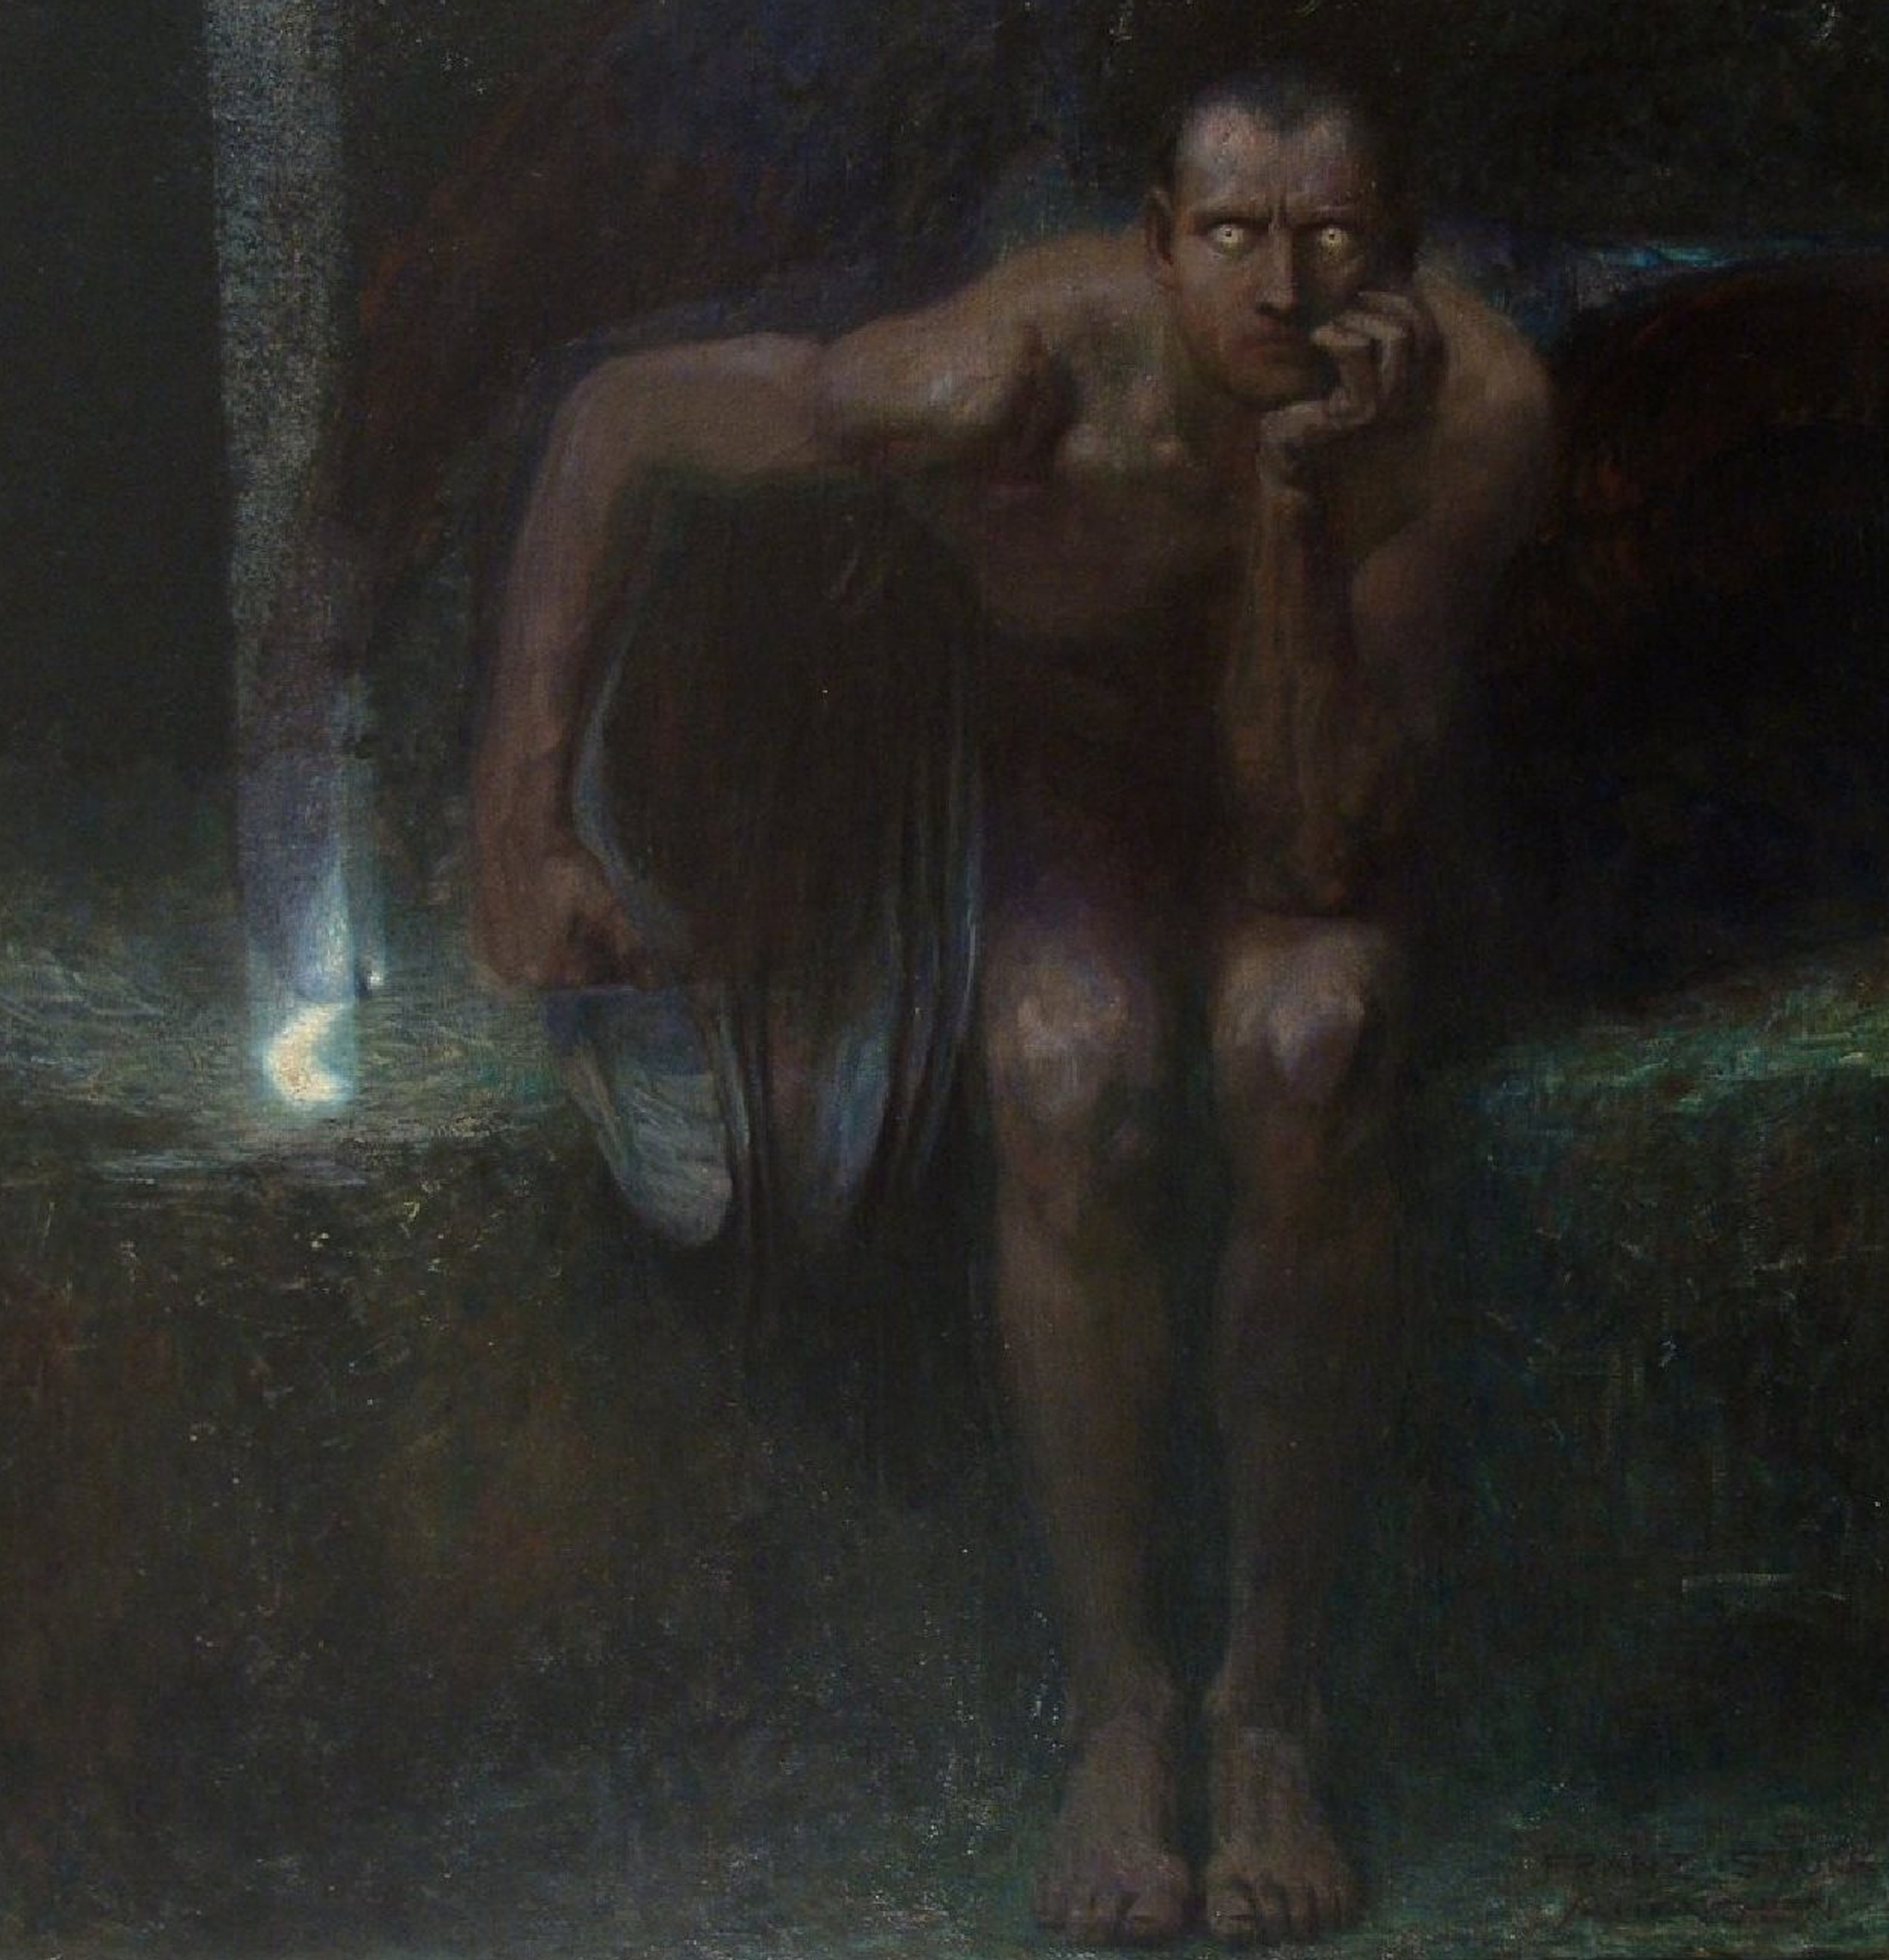 Lucifer by Franz von Stuck - 1890 Europeana